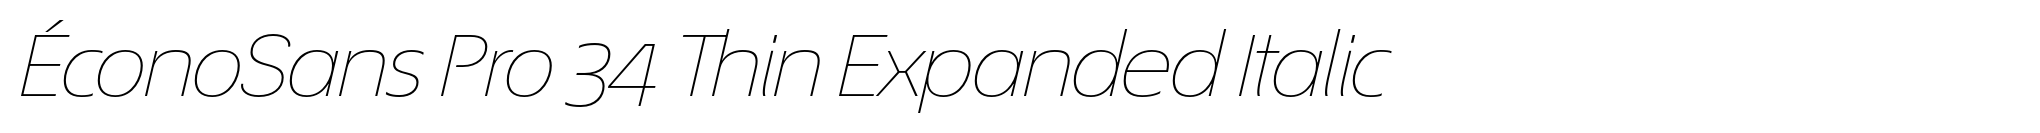 ÉconoSans Pro 34 Thin Expanded Italic image